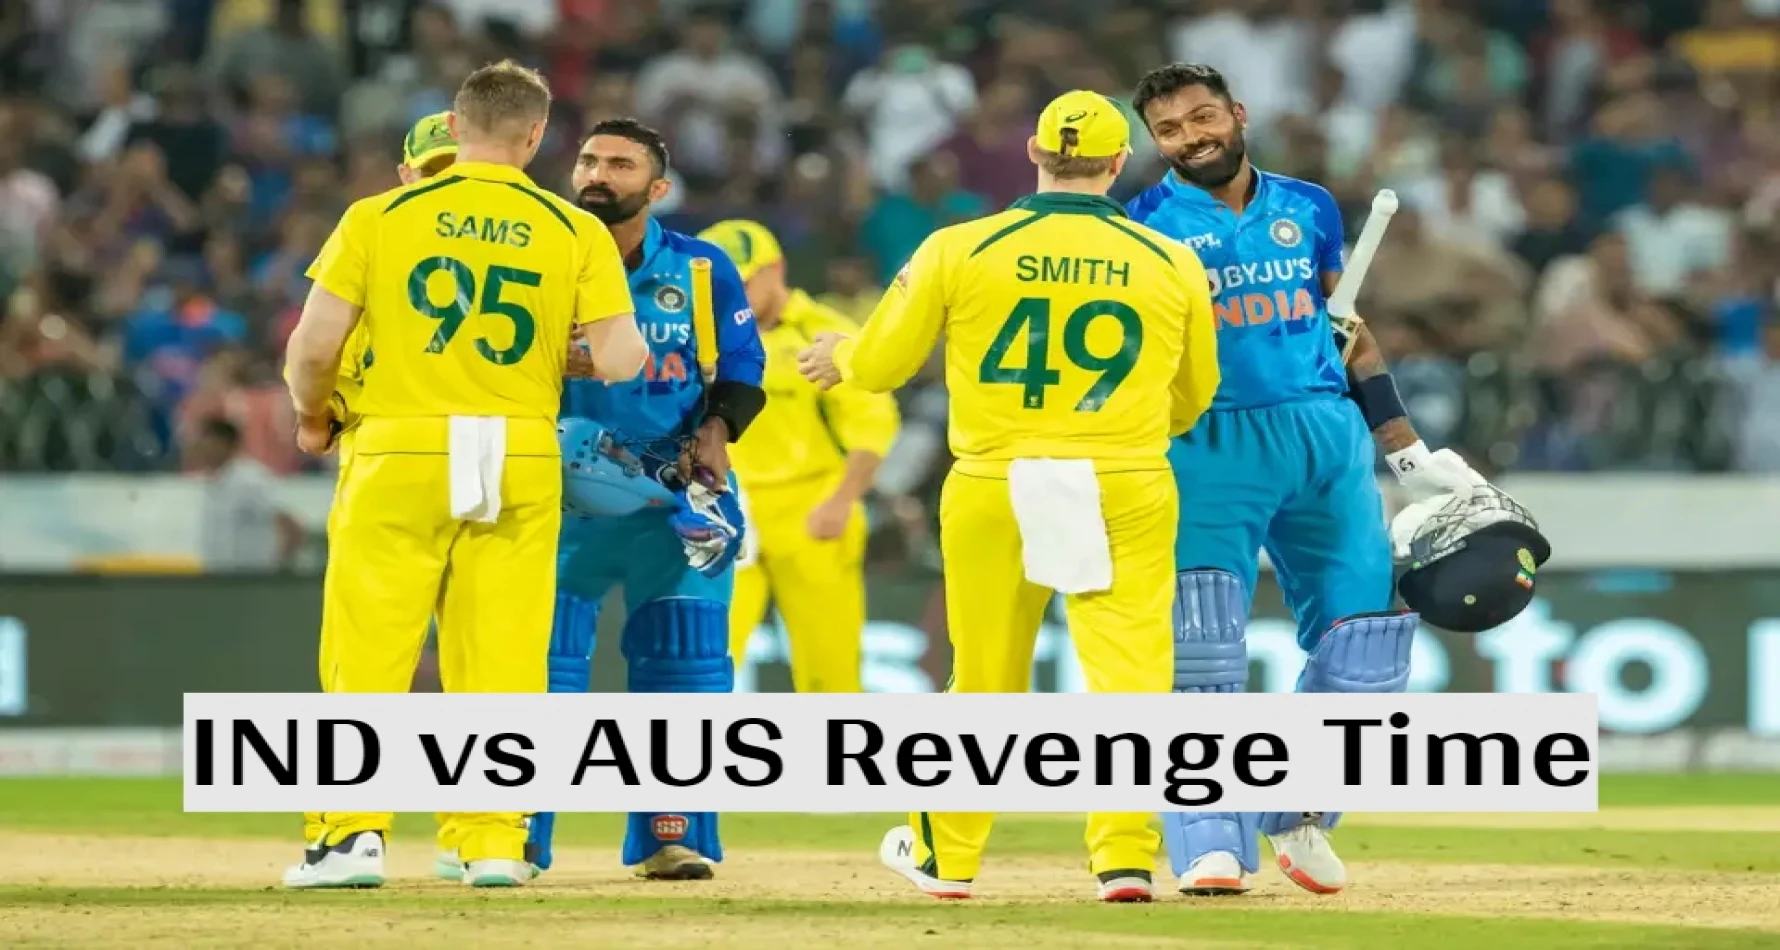 IND vs AUS: आज से टी20 सीरीज का होगा आगाज,  ऑस्ट्रेलिया के खिलाफ आज भारत लेगा खिताबी हार का बदला!